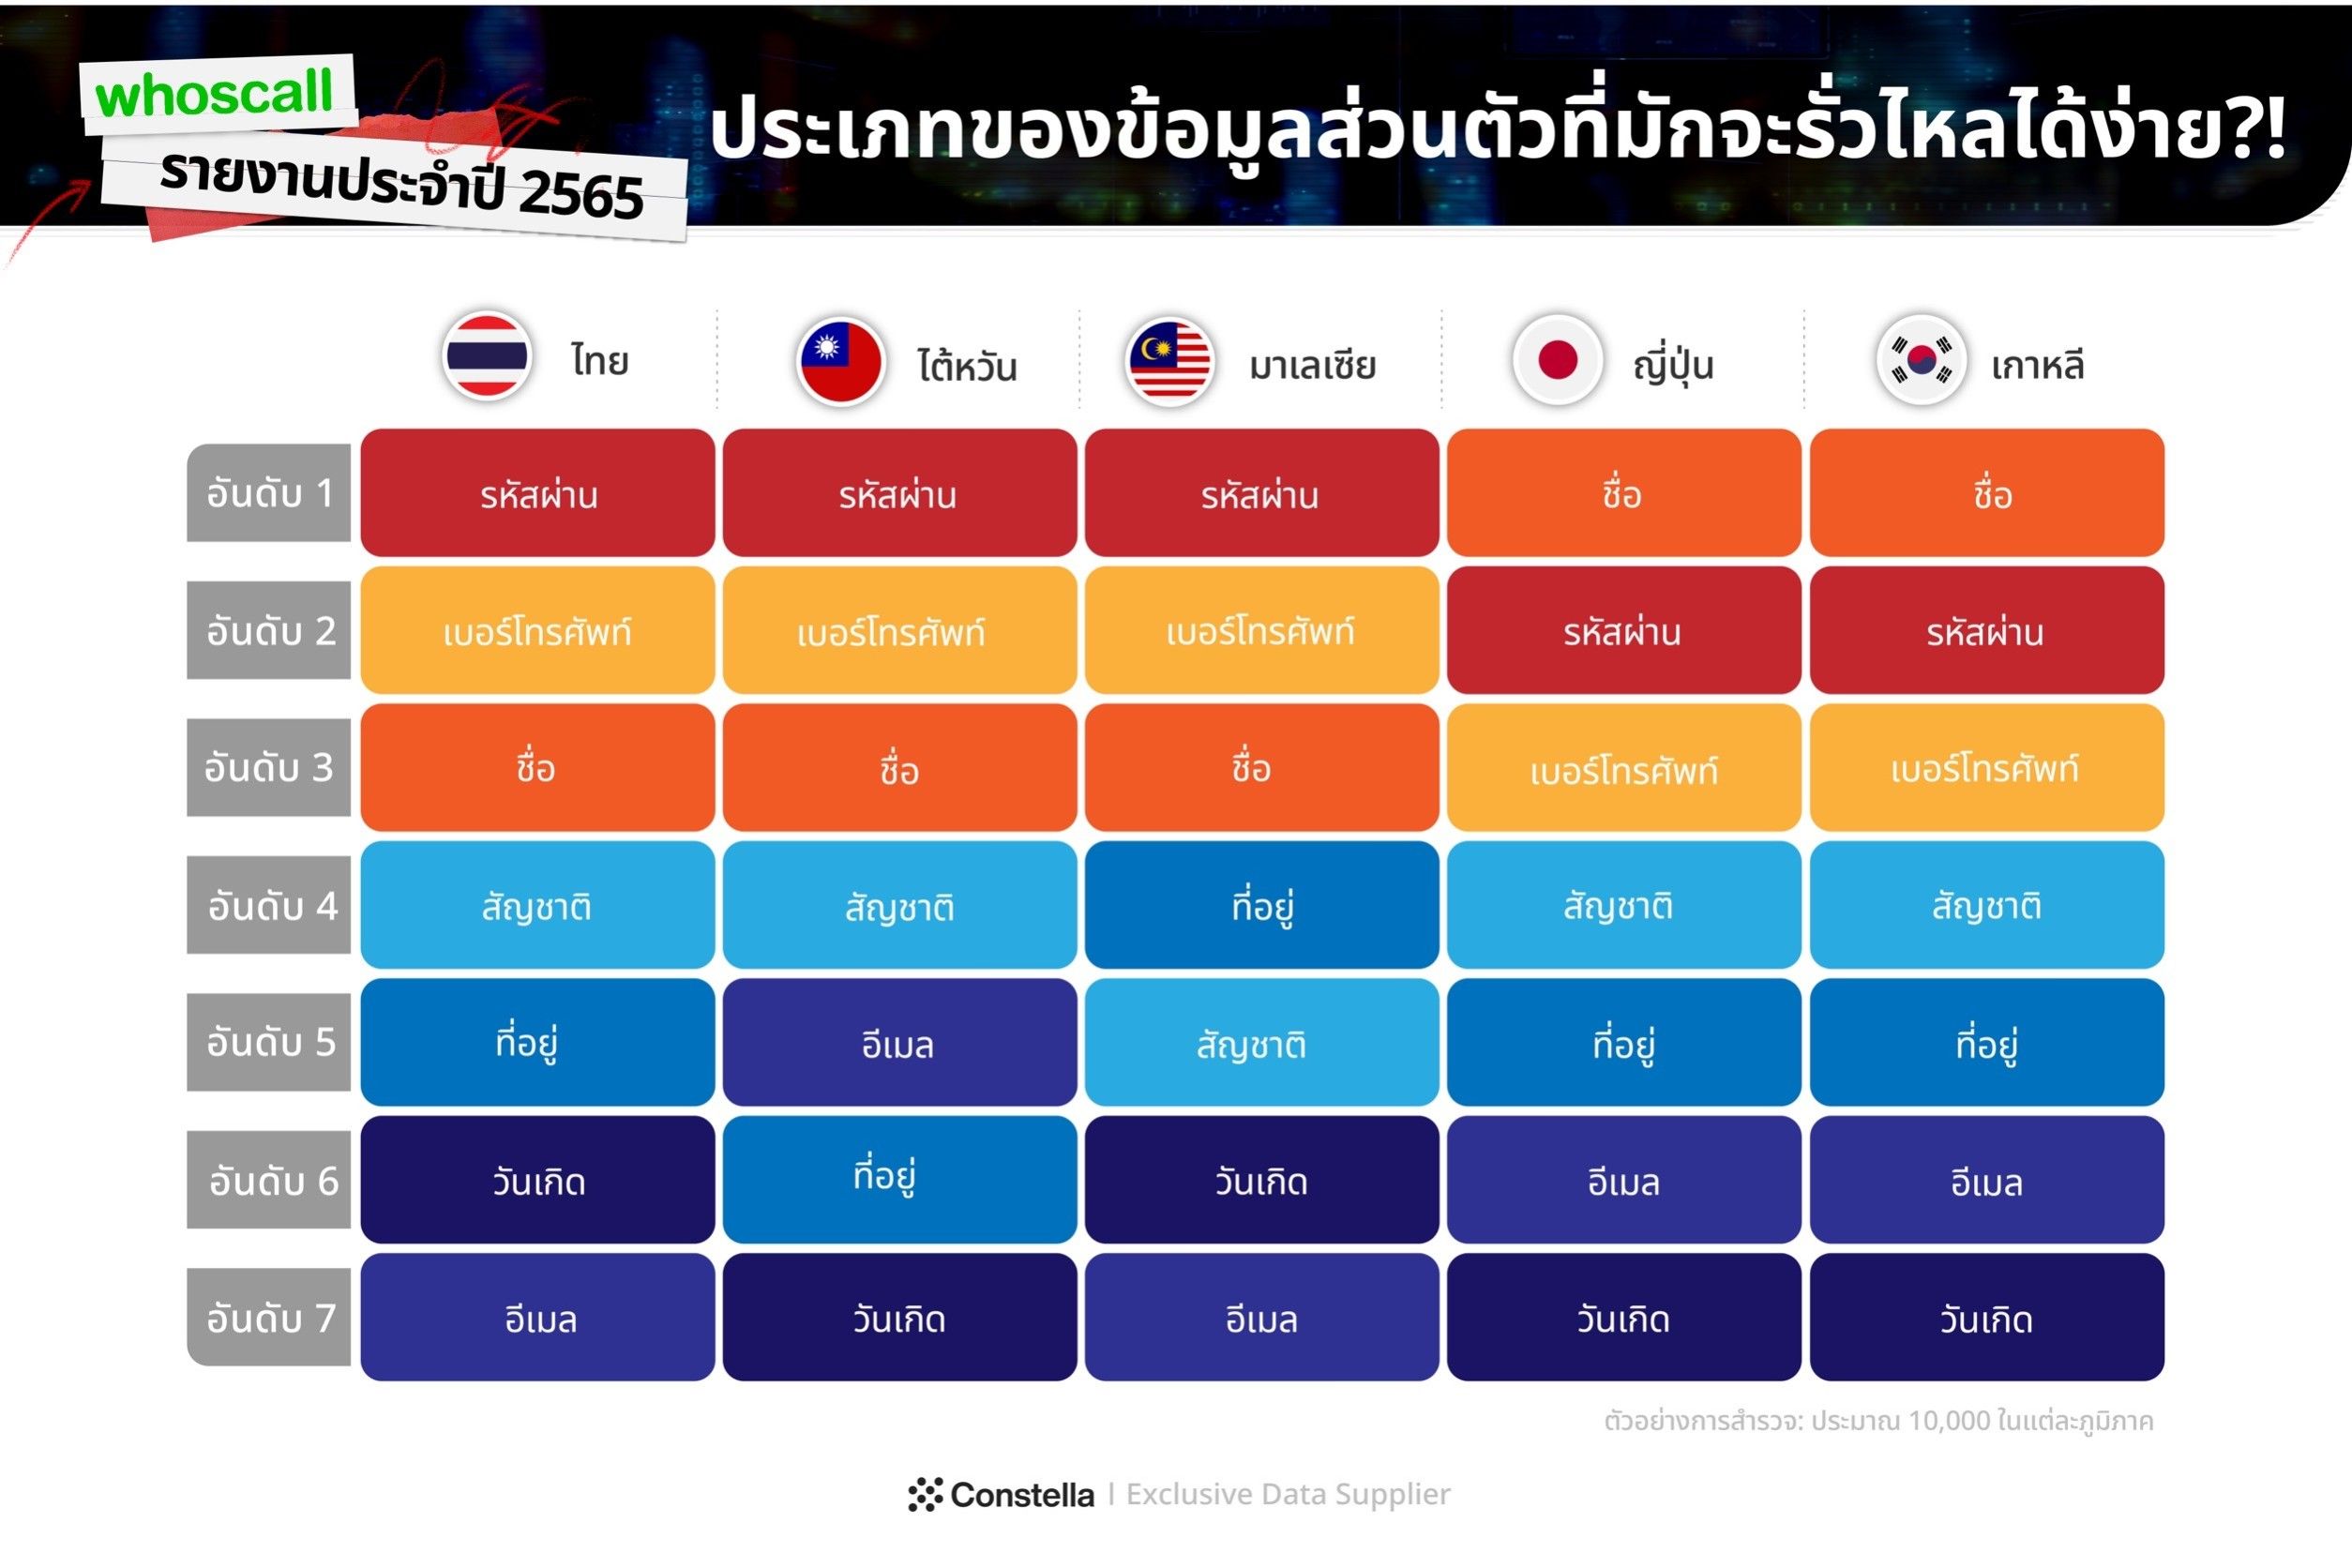 Whoscall เผยยอดมิจฉาชีพโทรหลอกลวงคนไทย พุ่งสูงขึ้น 165% พบเบอร์มือถือคนไทยรั่วไหลกว่า  13 ล้านเบอร์ | Droidsans